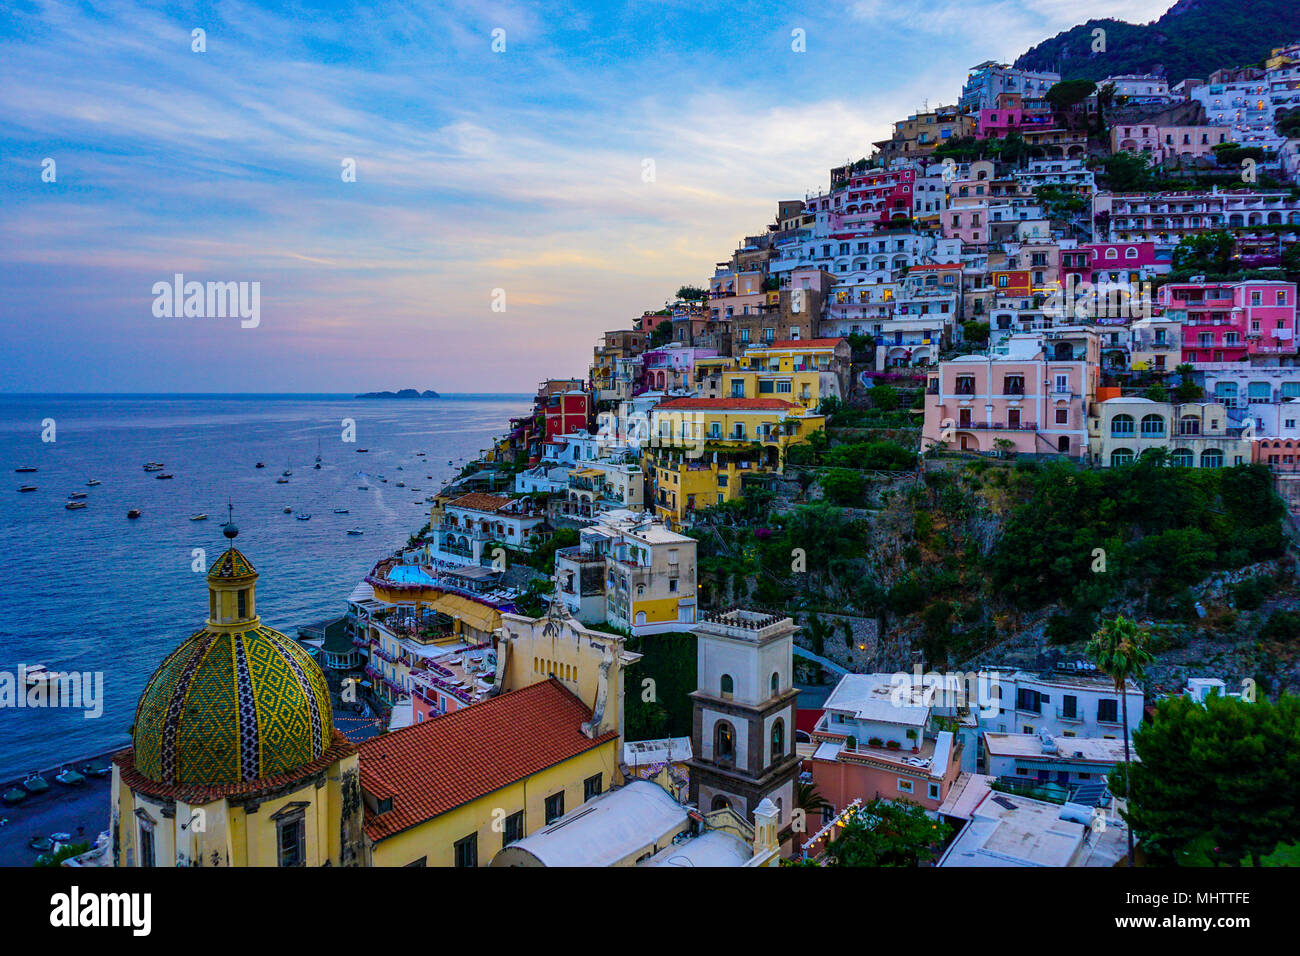 Vista de Positano, Amalfi Coast, Italia al atardecer con el domo de la Chiesa di Santa Maria Assunta en primer plano Foto de stock